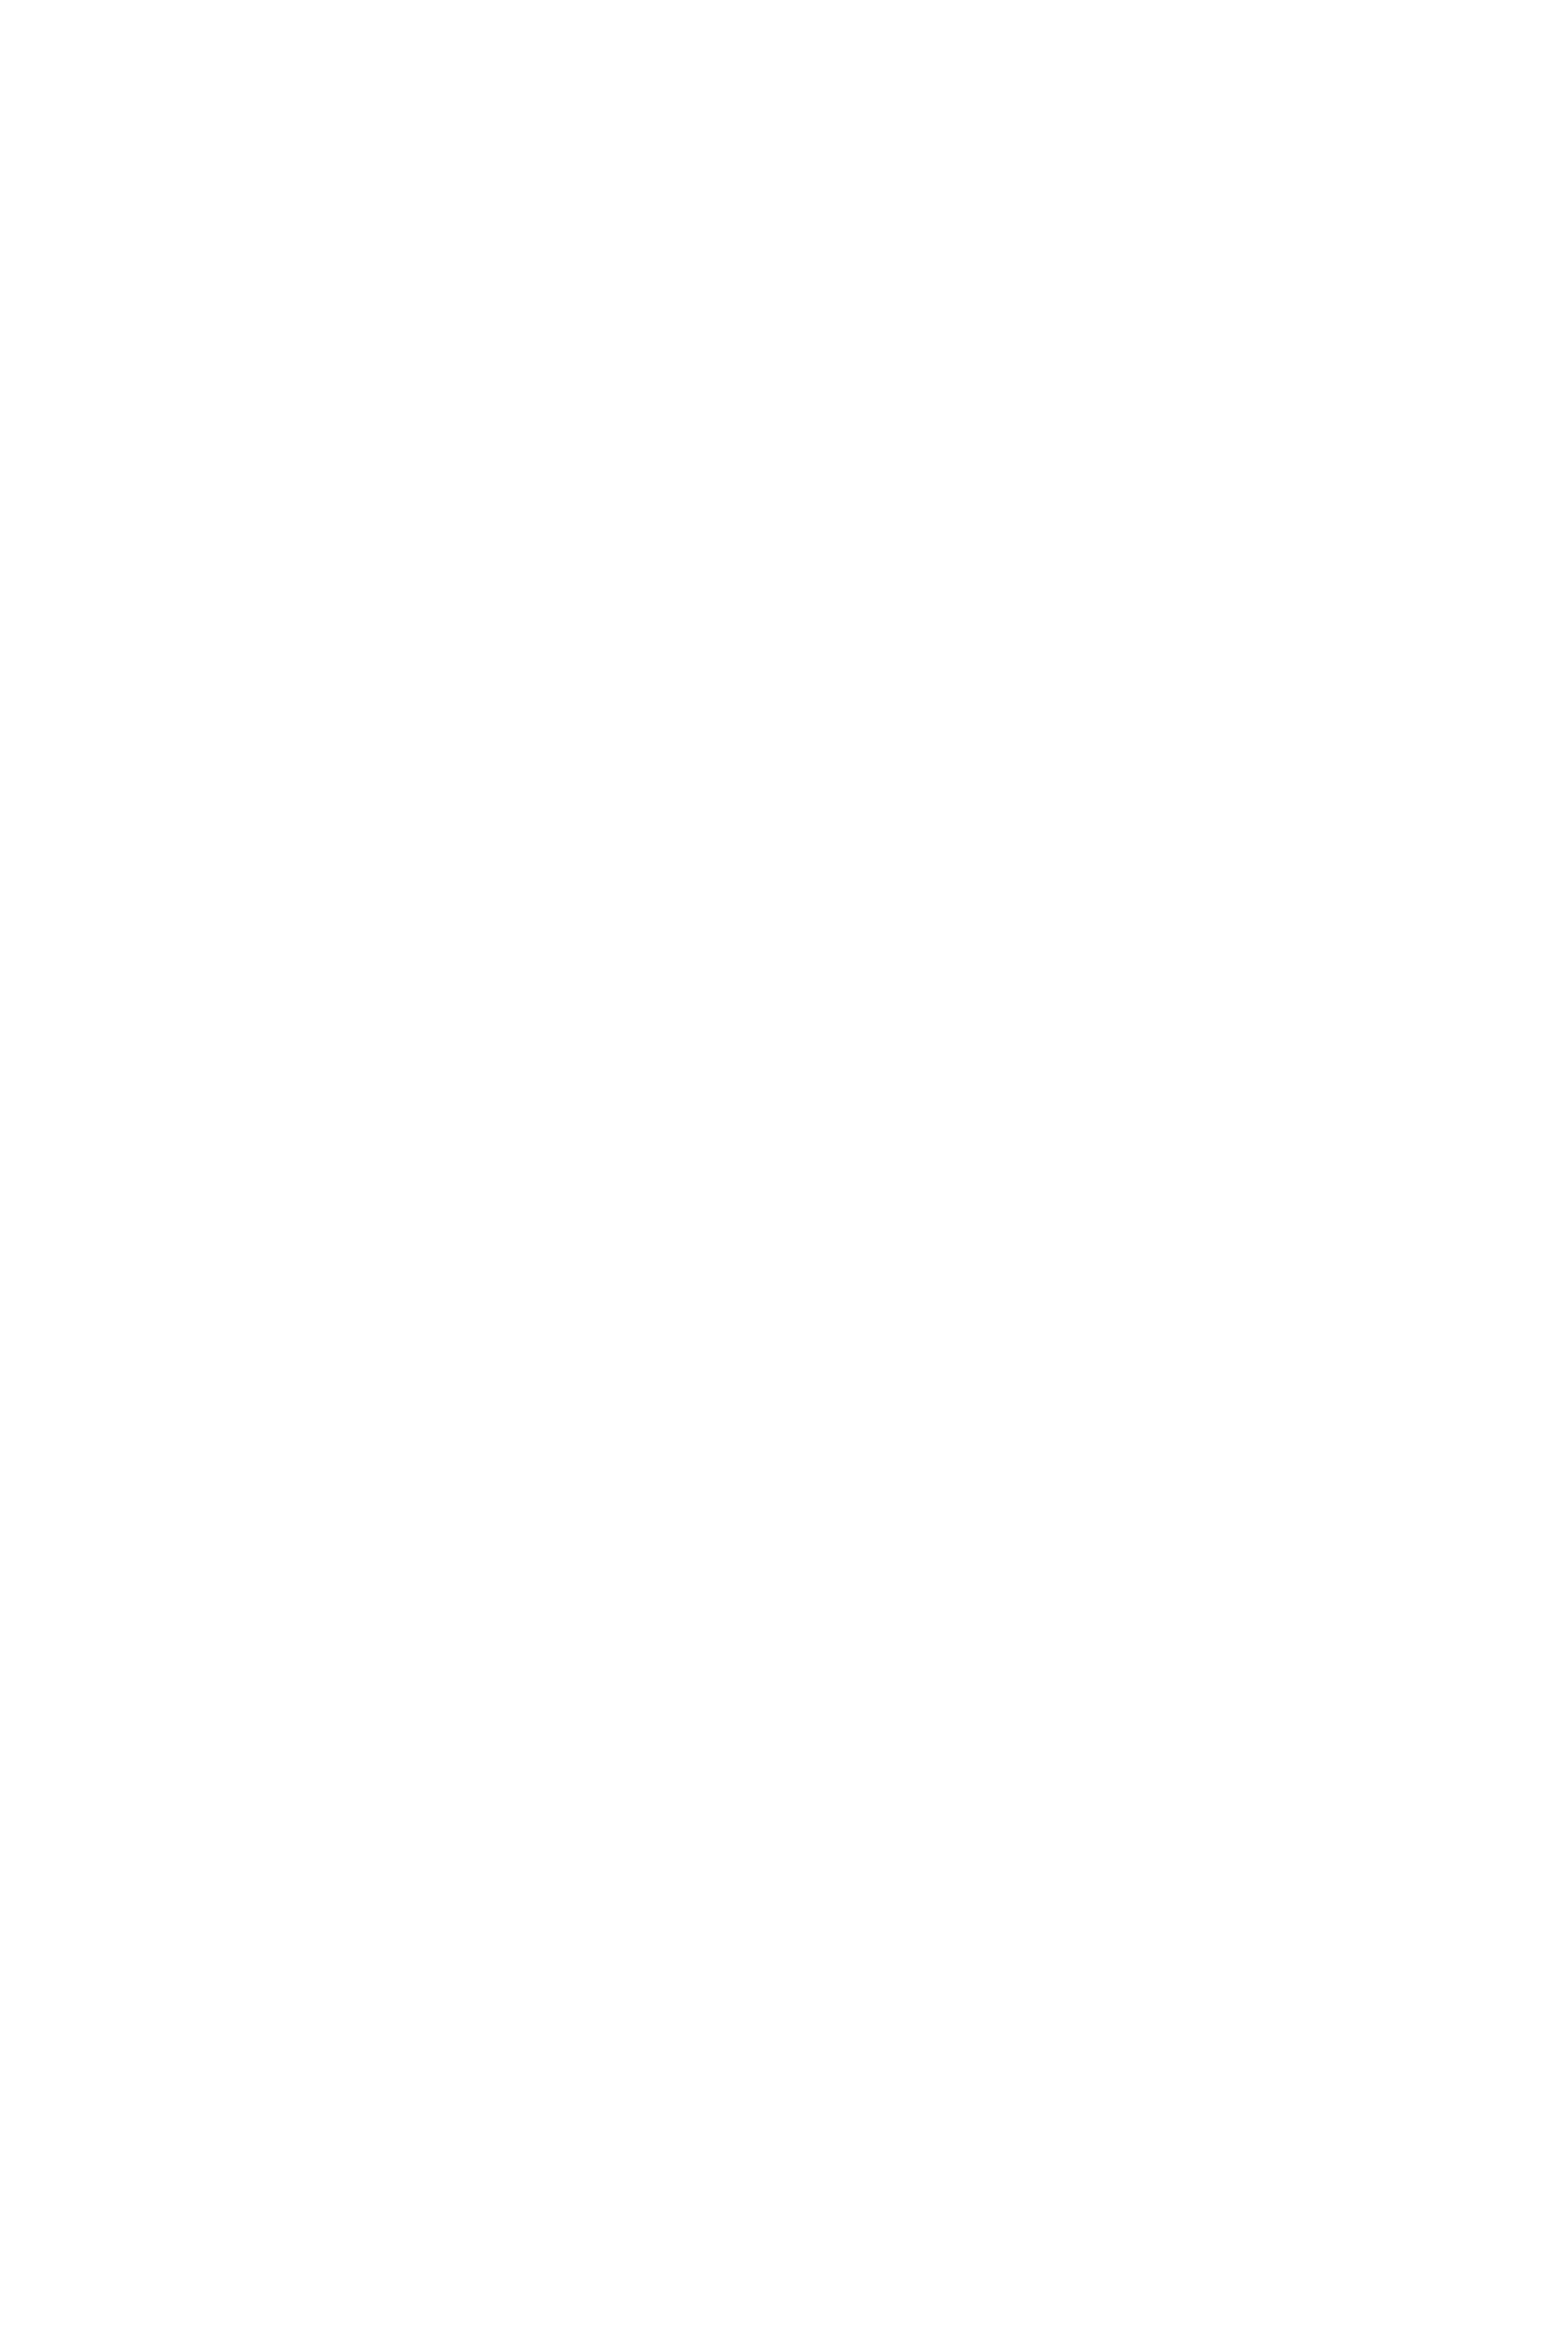 Свитер с подсолгухами по картине Винсента Ван Гога "Подсолнухи" бренда "Таня Исаева"